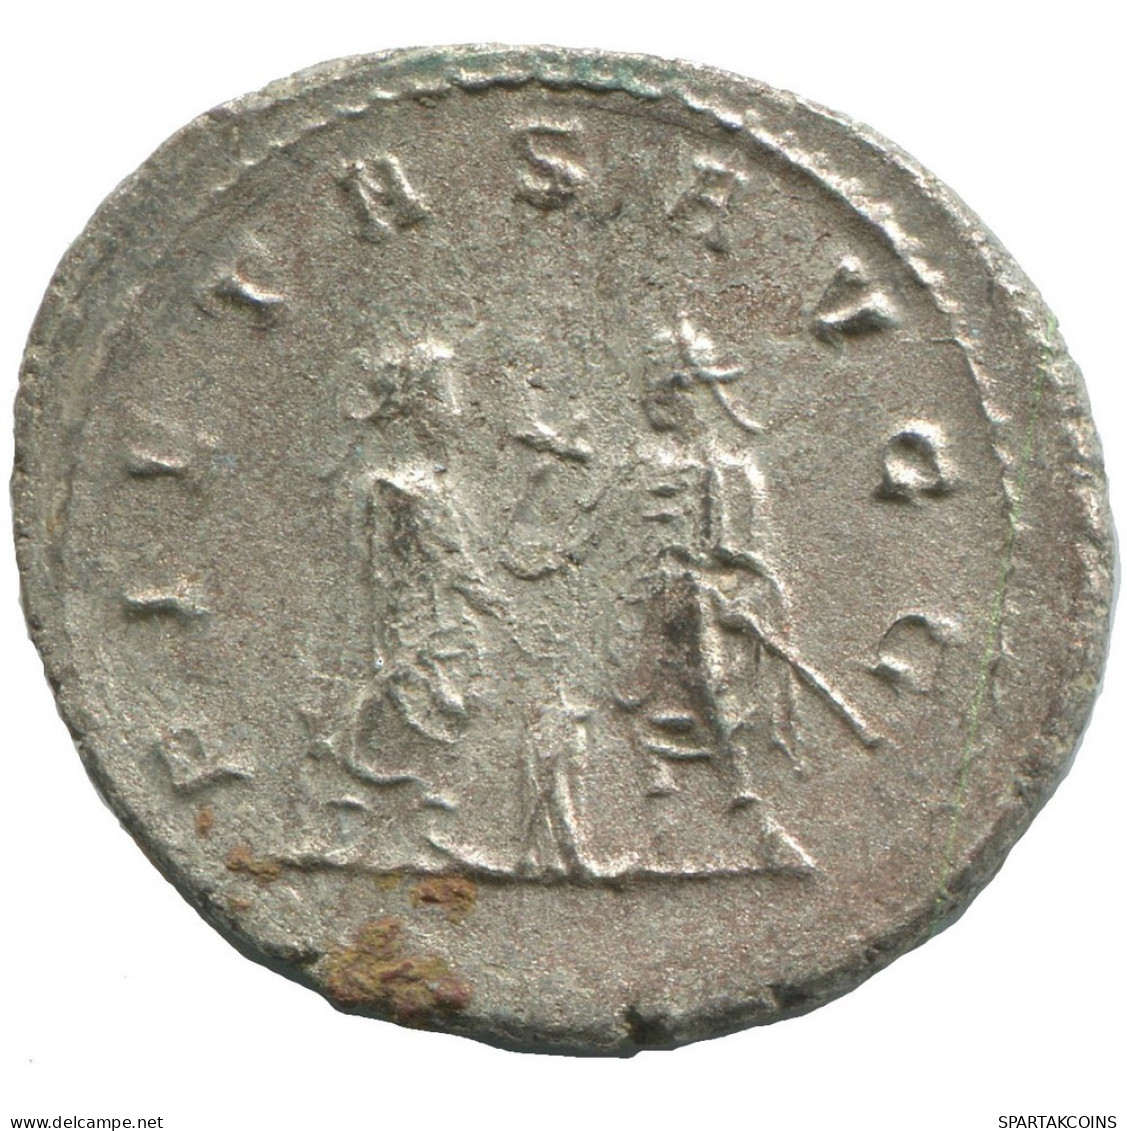 VALERIAN I SAMOSATA AD256-258 SILVERED ROMAN Coin 4.3g/25mm #ANT2722.41.U.A - Der Soldatenkaiser (die Militärkrise) (235 / 284)